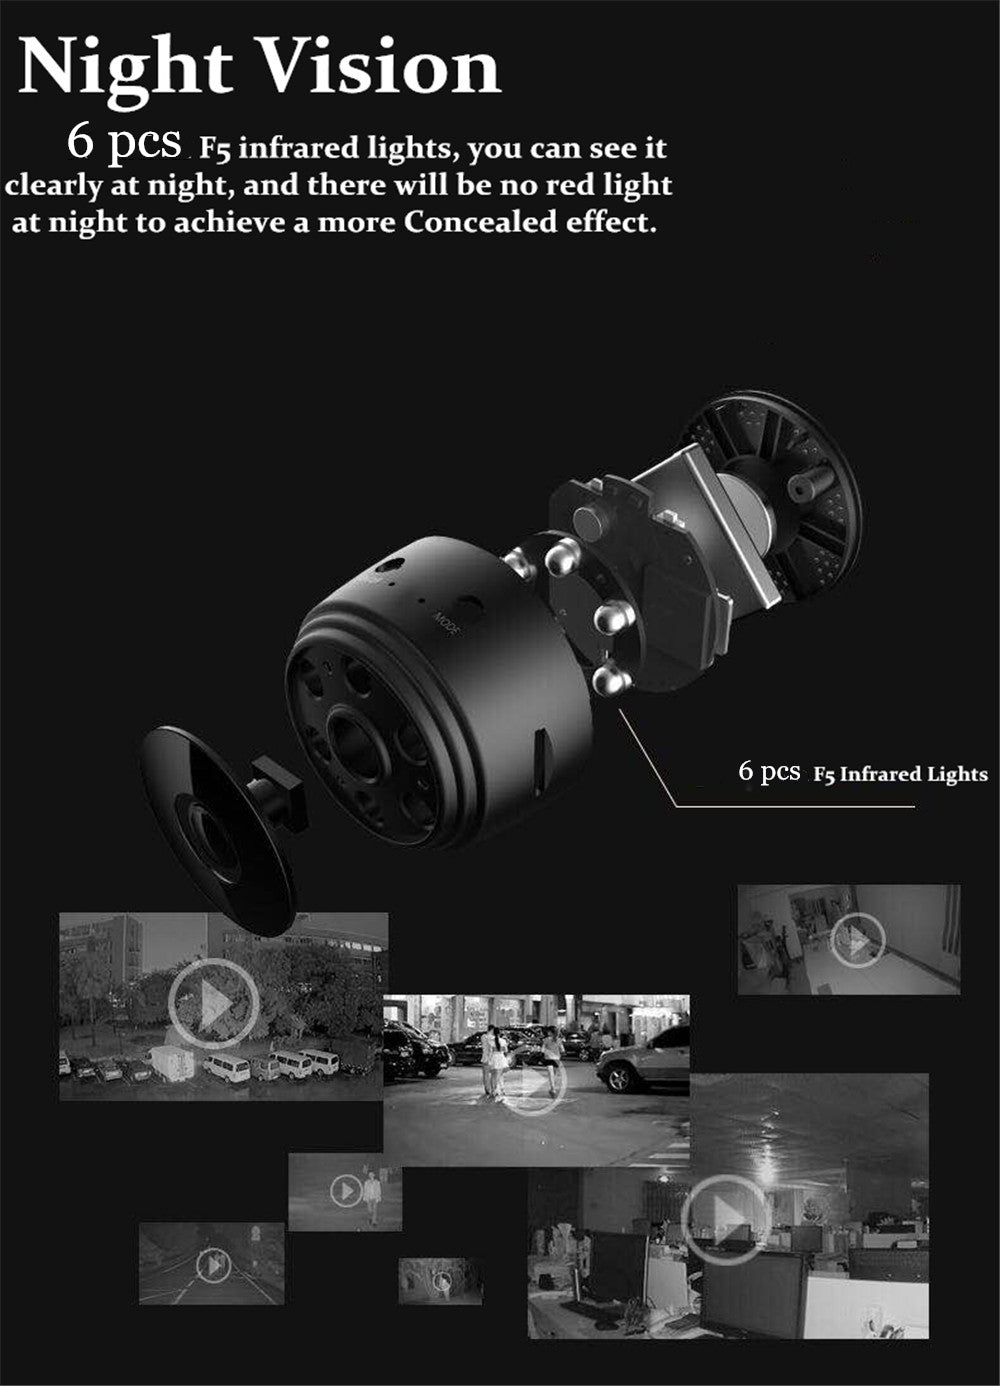 A9 Mini Camera WiFi Camera 1080p HD Night Version Micro Voice Recorder Wireless Mini Camcorders